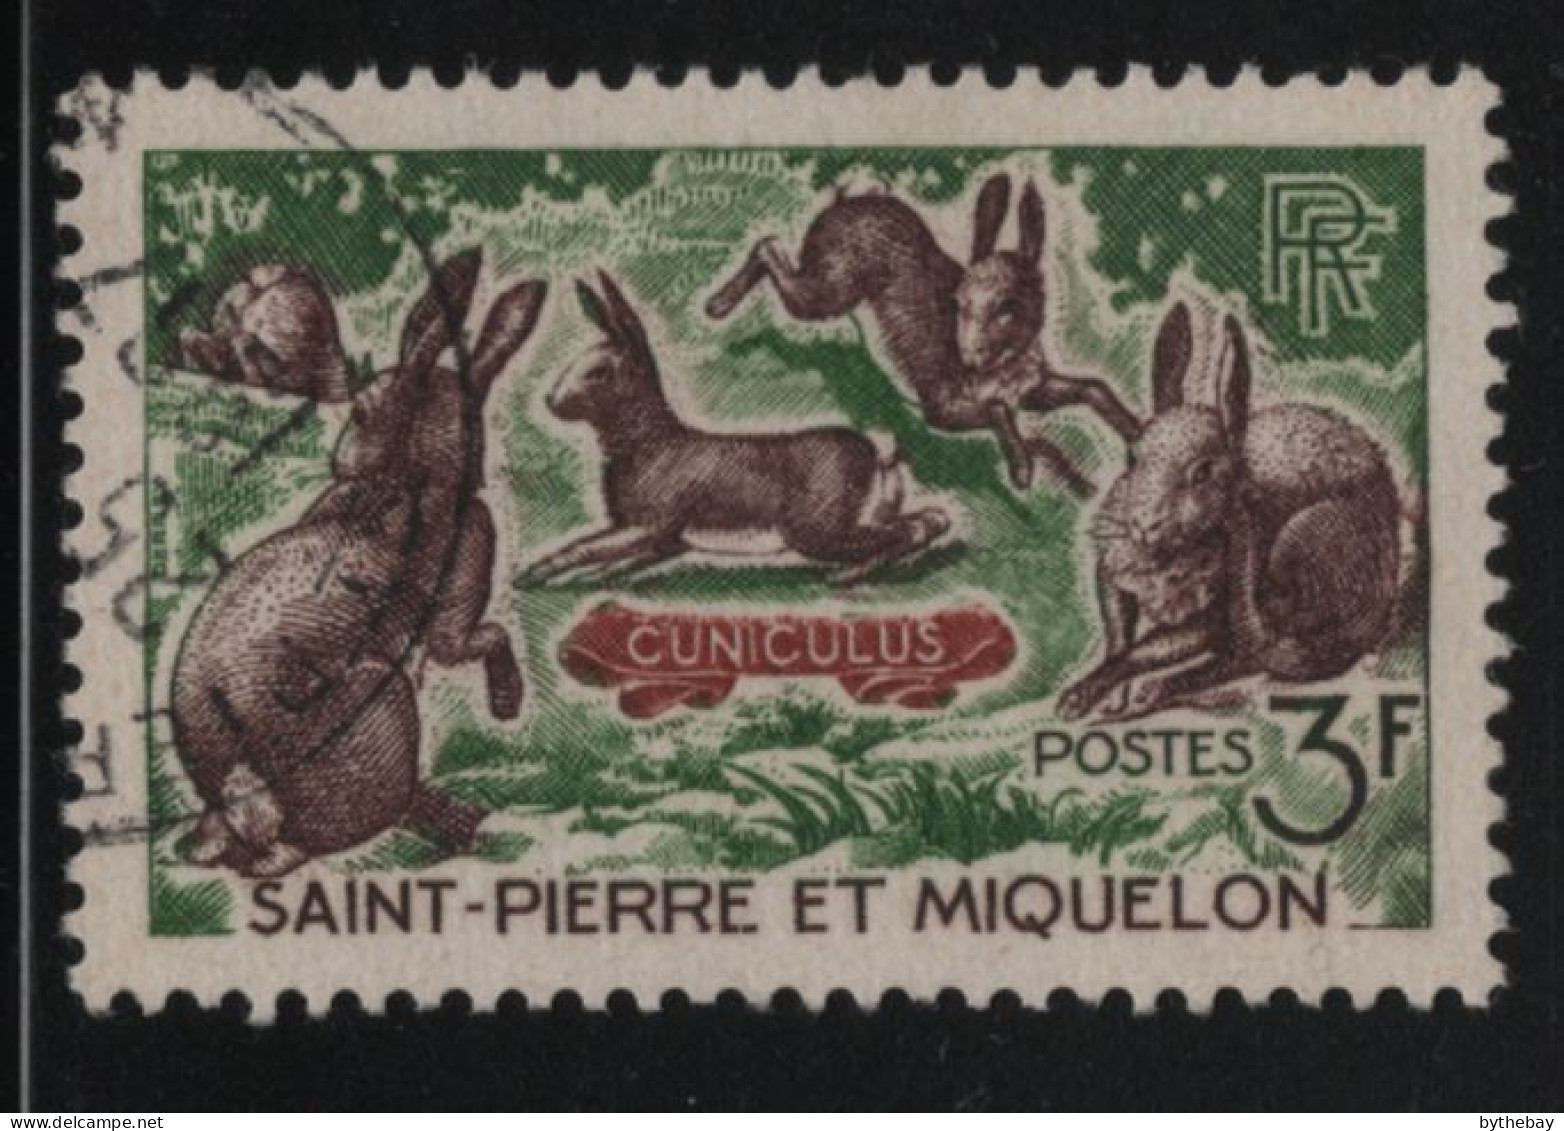 St Pierre Et Miquelon 1964 Used Sc 370 3fr Rabbits - Usati